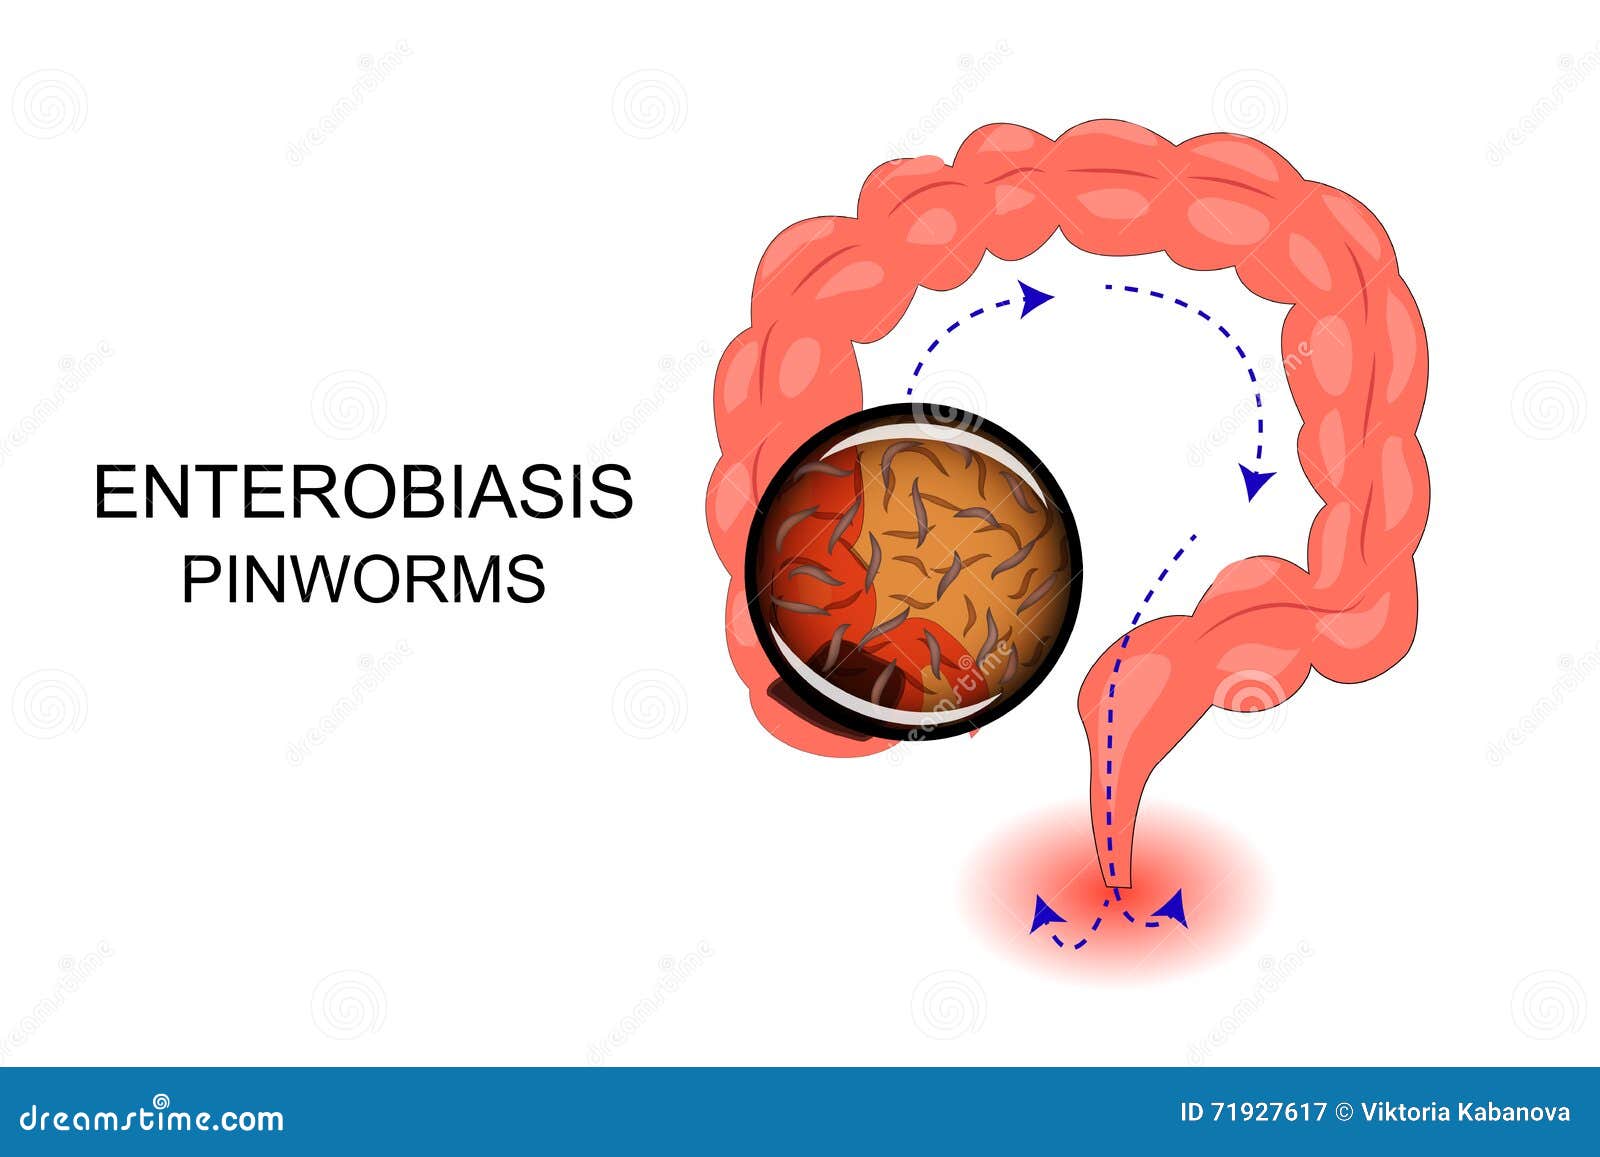 Mi a veszélyes enterobiosis?